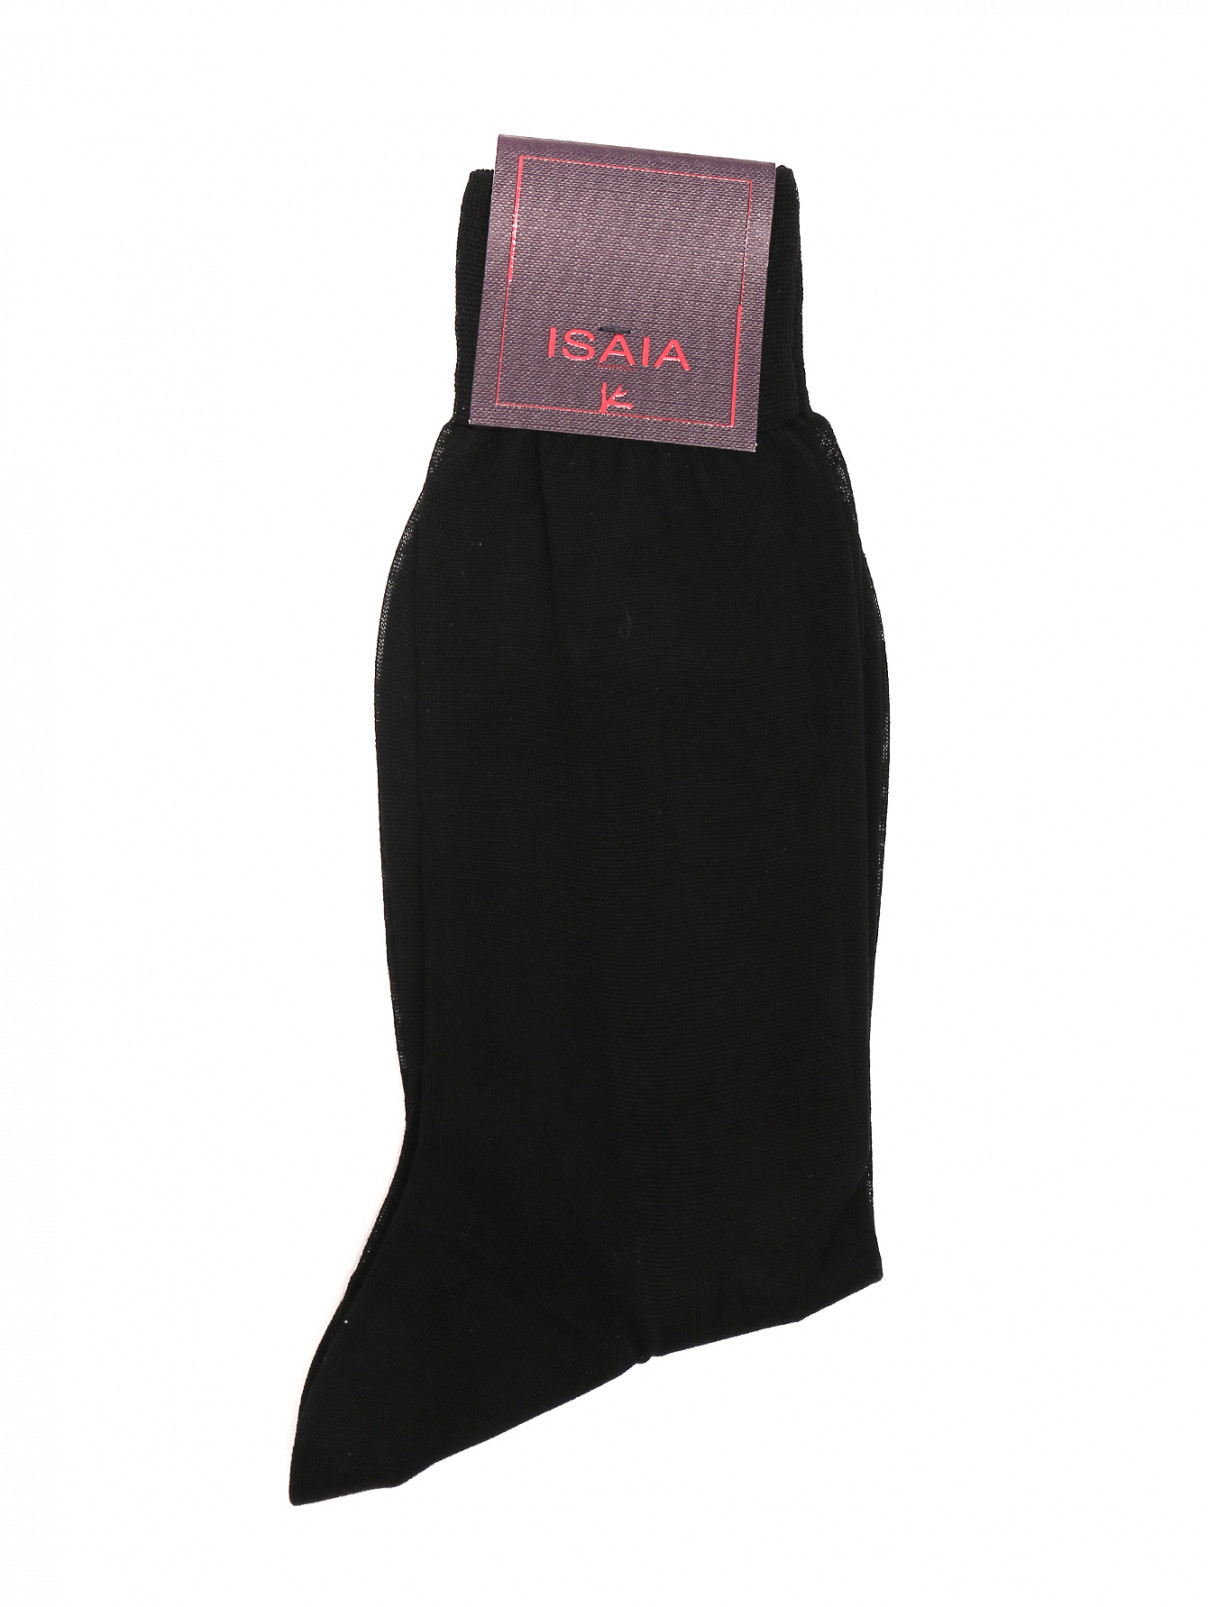 Носки из хлопка с принтом Isaia  –  Общий вид  – Цвет:  Черный